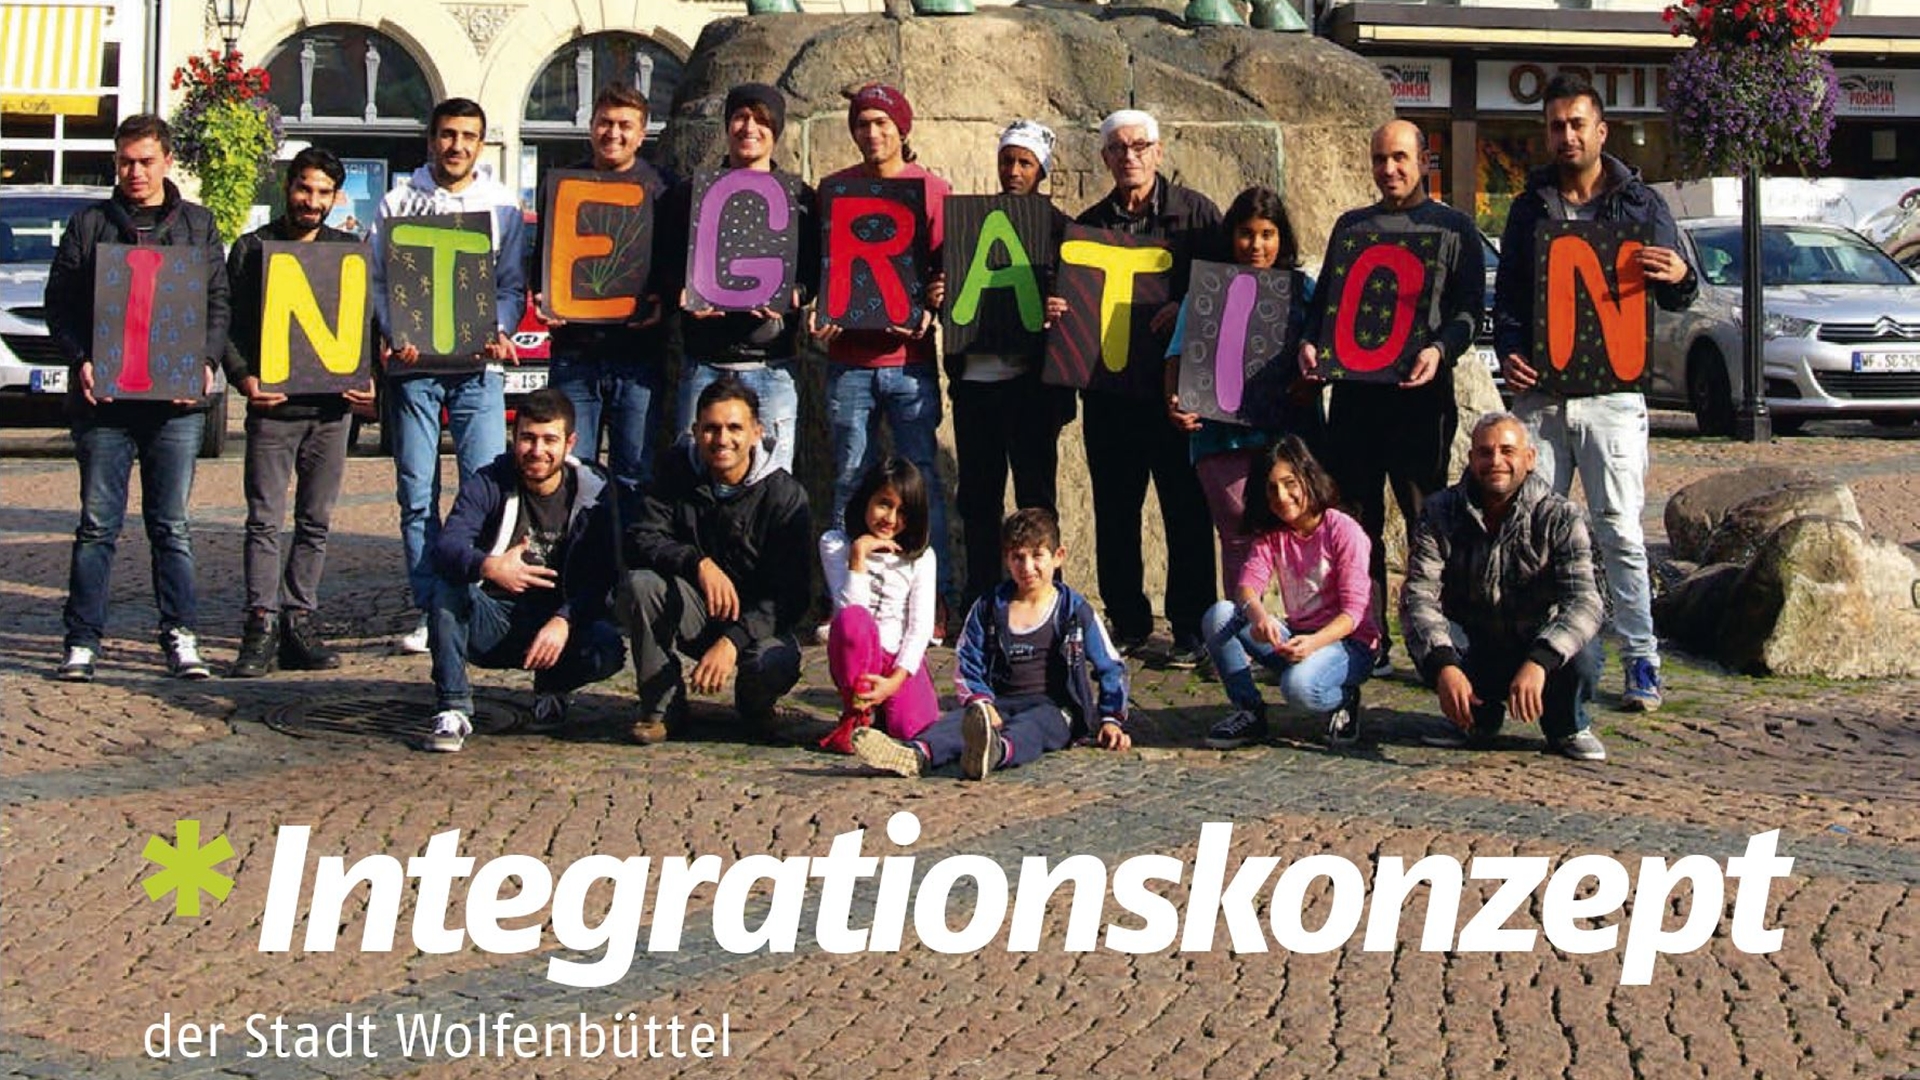 Gruppenfoto vor dem Reiterdenkmal auf dem Wolfenbütteler Stadtmarkt. Menschen halten Buchstaben hoch, auf dem insgesamt das Wort "Integration" zu lesen ist. am unteren Bildrand steht "Integrationskonzept der Stadt Wolfenbüttel".